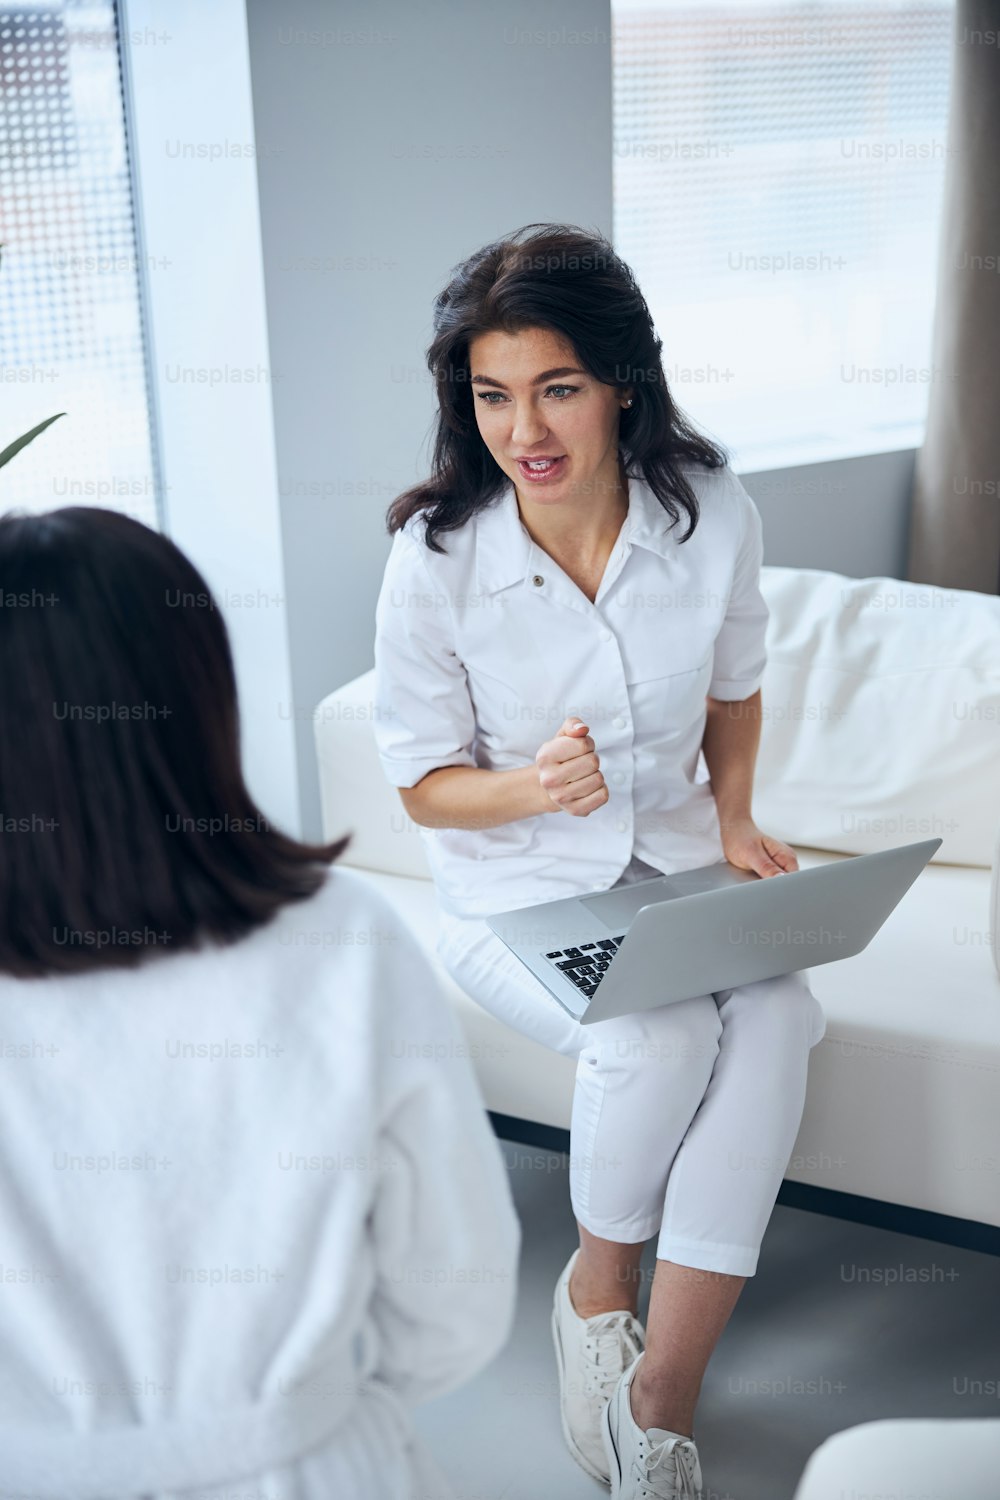 상담 중 여성을 인터뷰하는 무릎에 노트북을 들고 집중된 의료 종사자